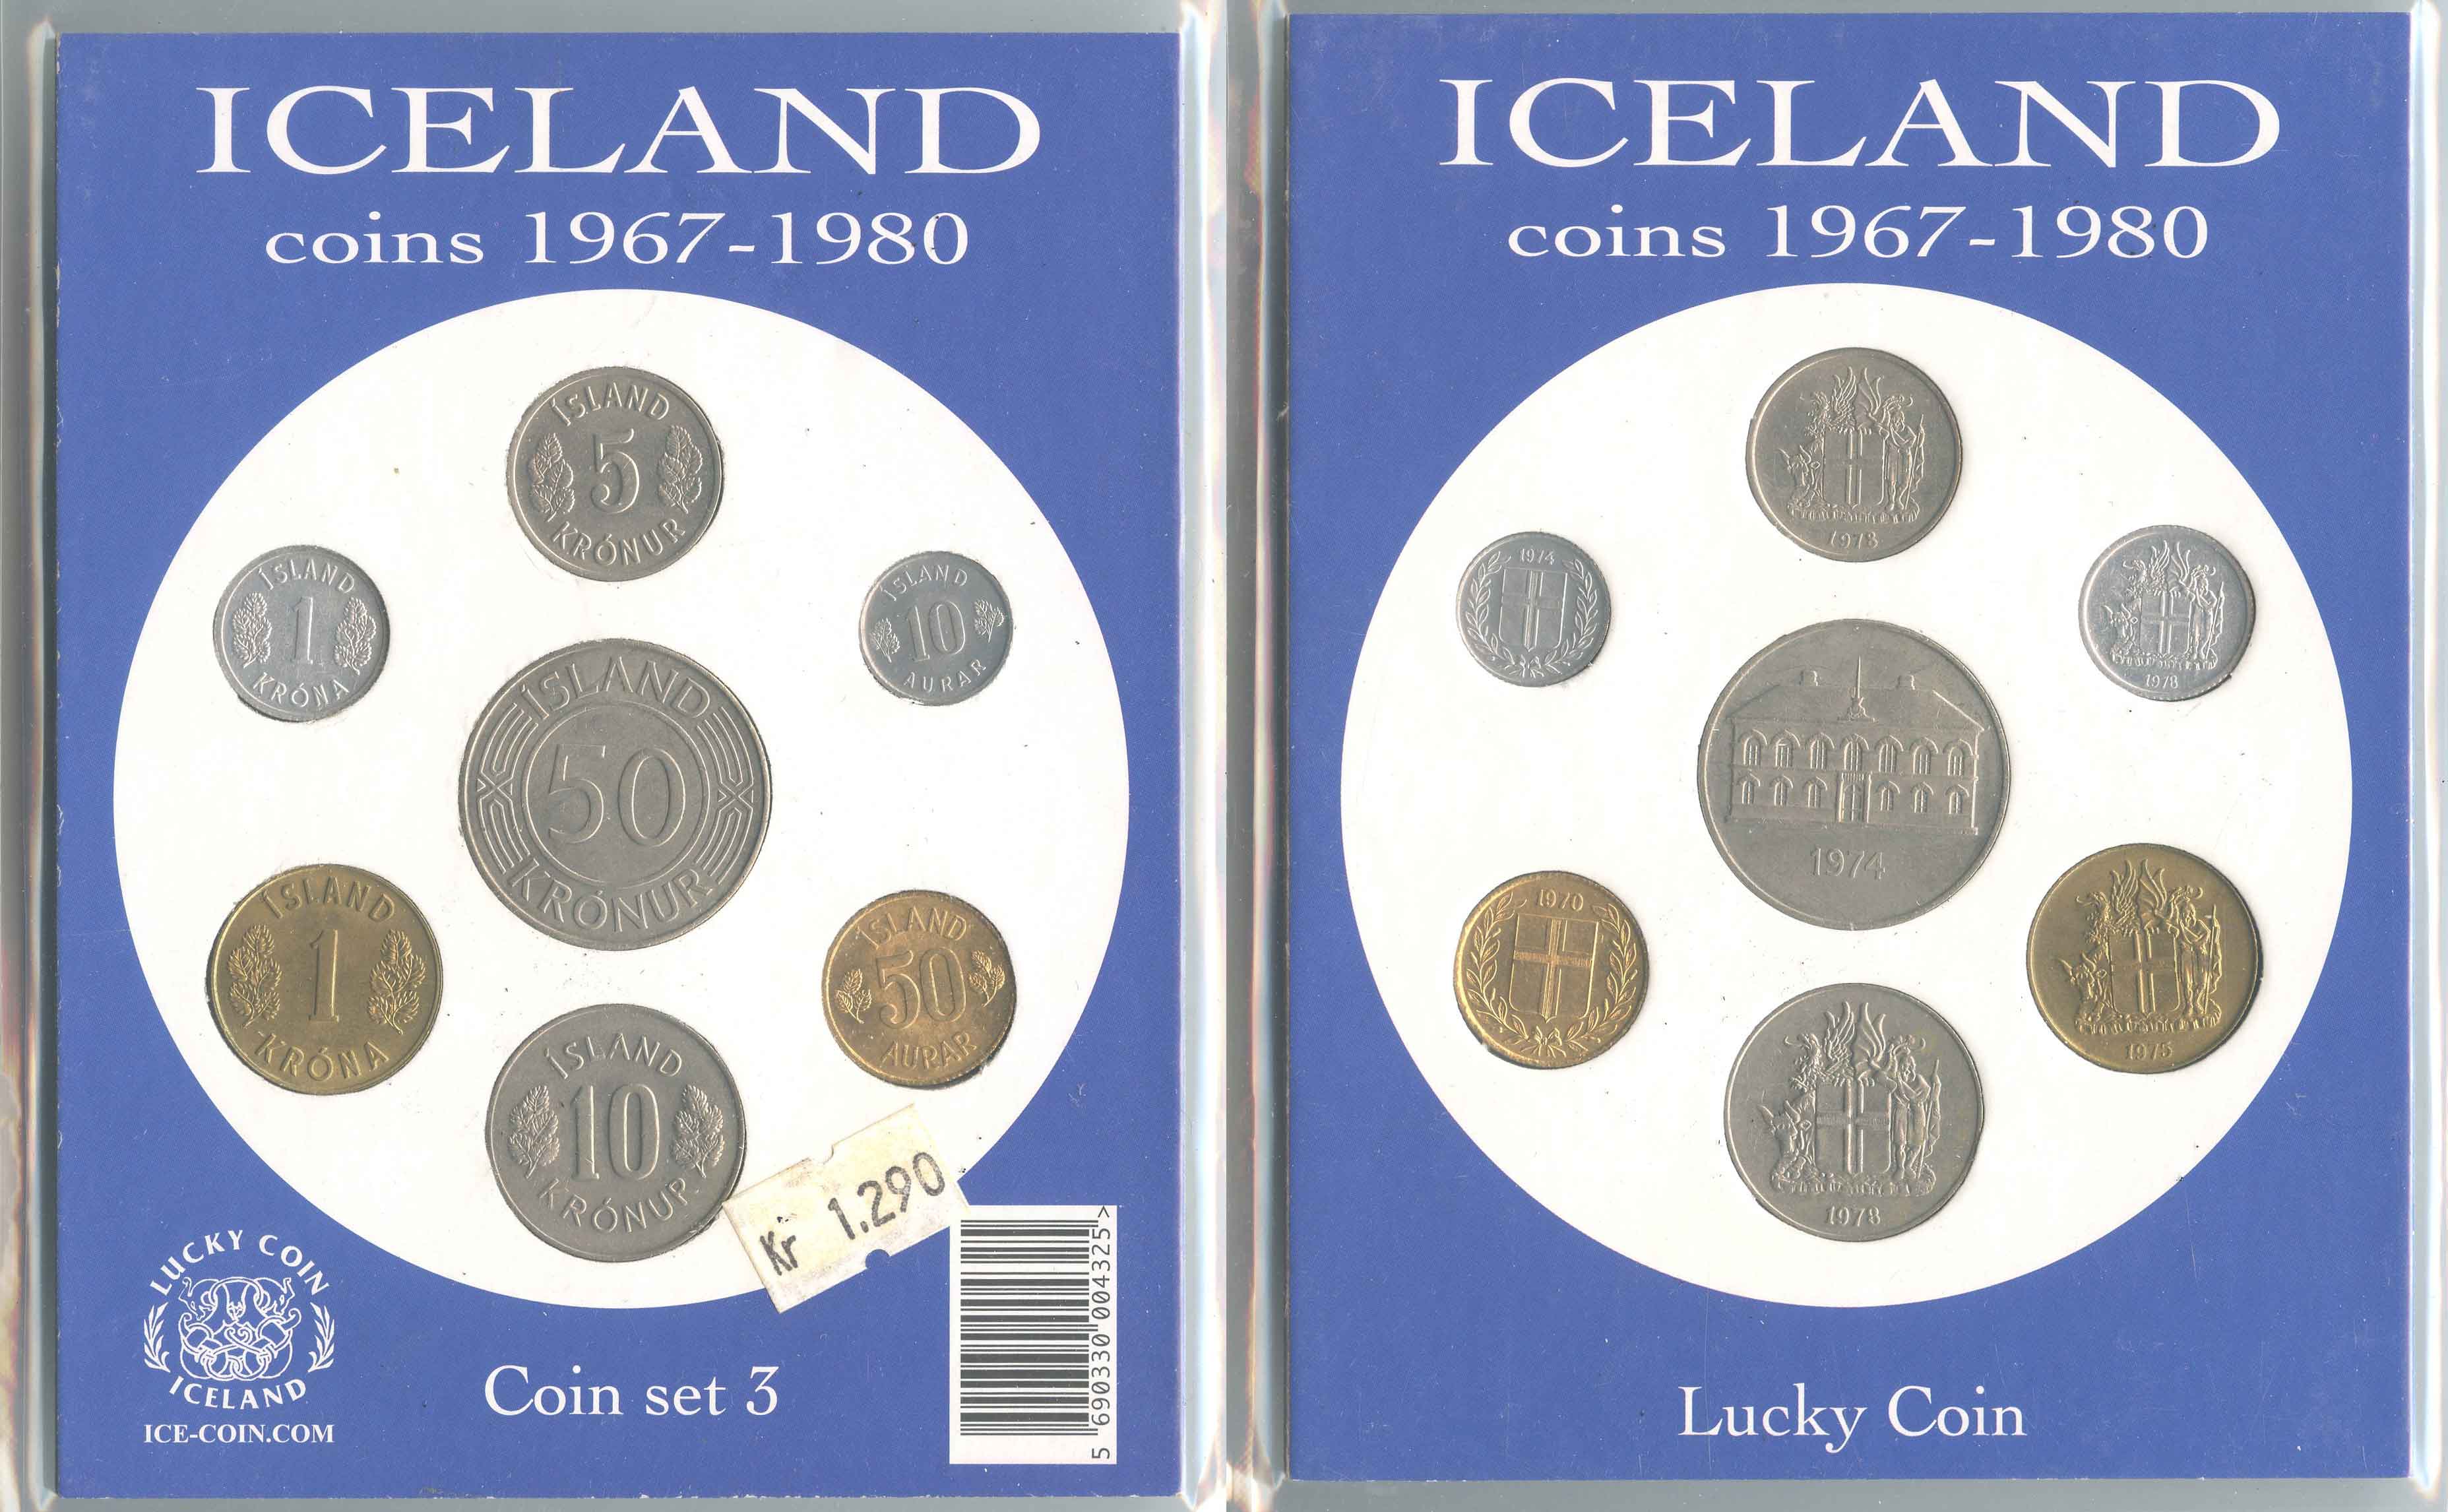 ISLANDA, "Coin set 1967-1980"